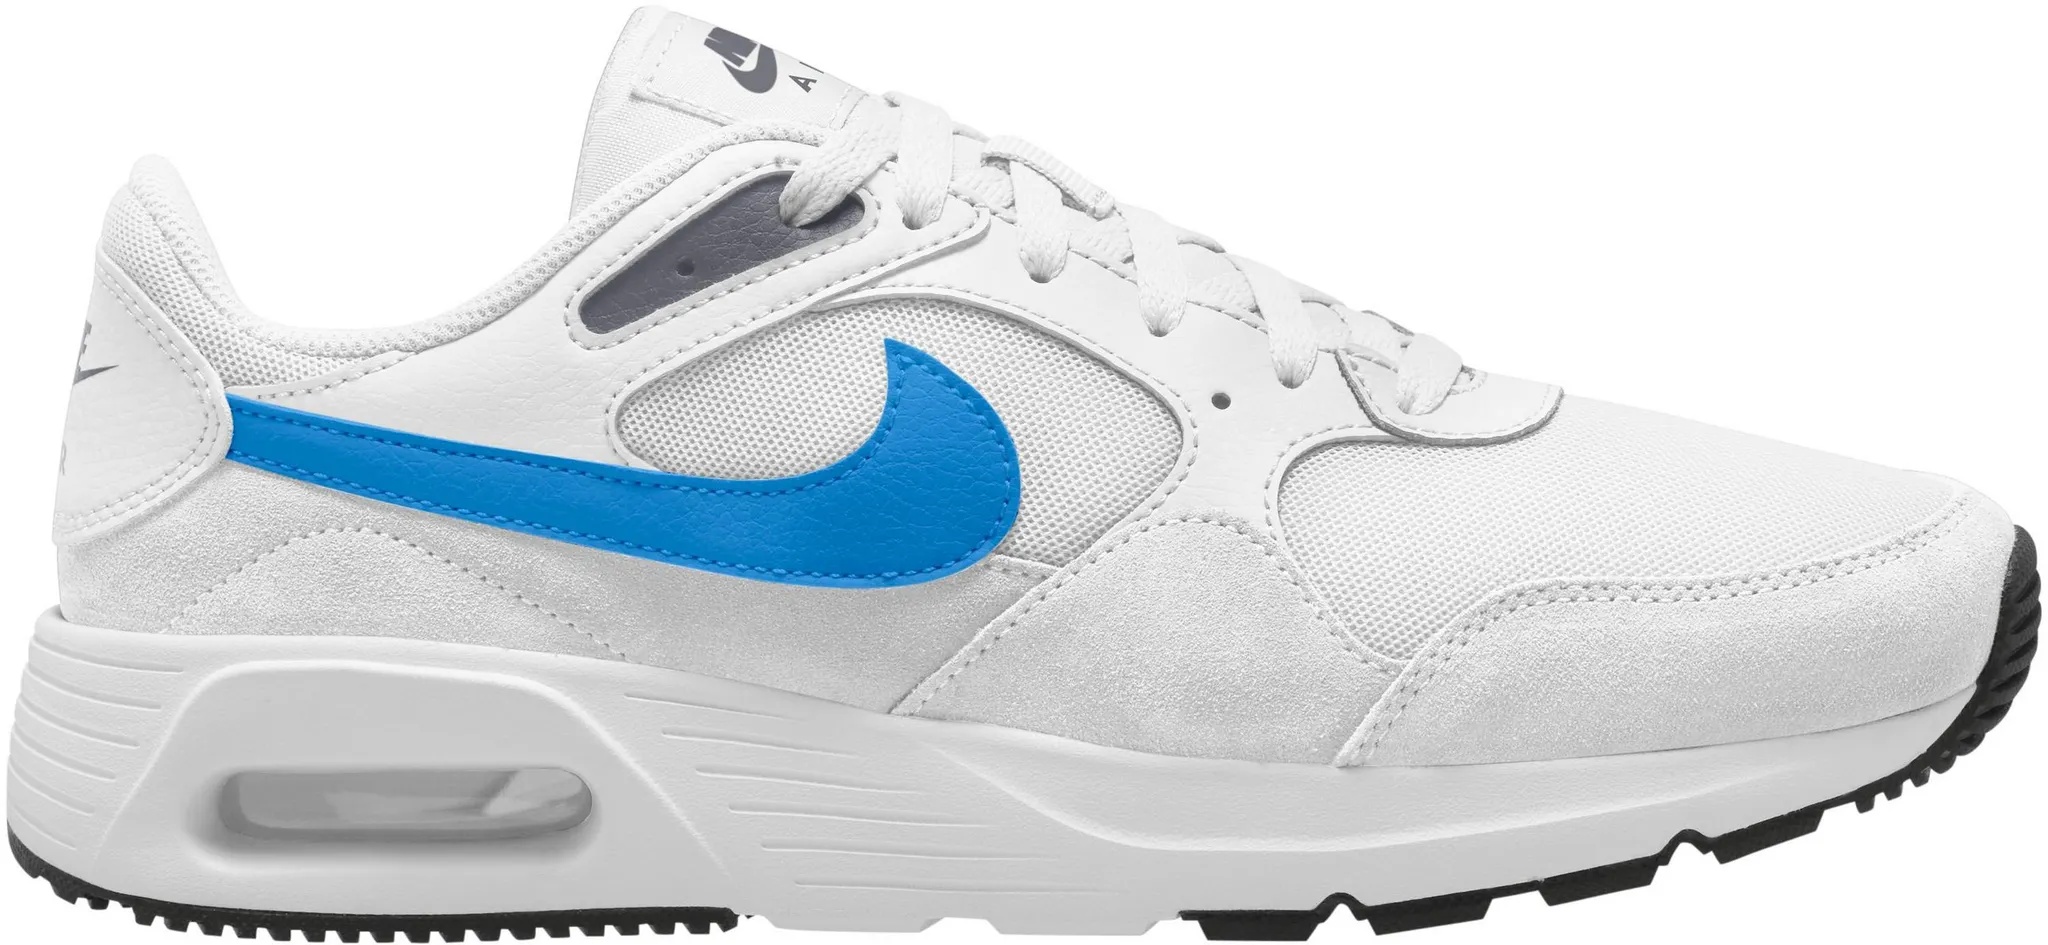 Nike Air Max SC Sneaker Herren in white-light photo blue-thunder blue-white, Größe 43